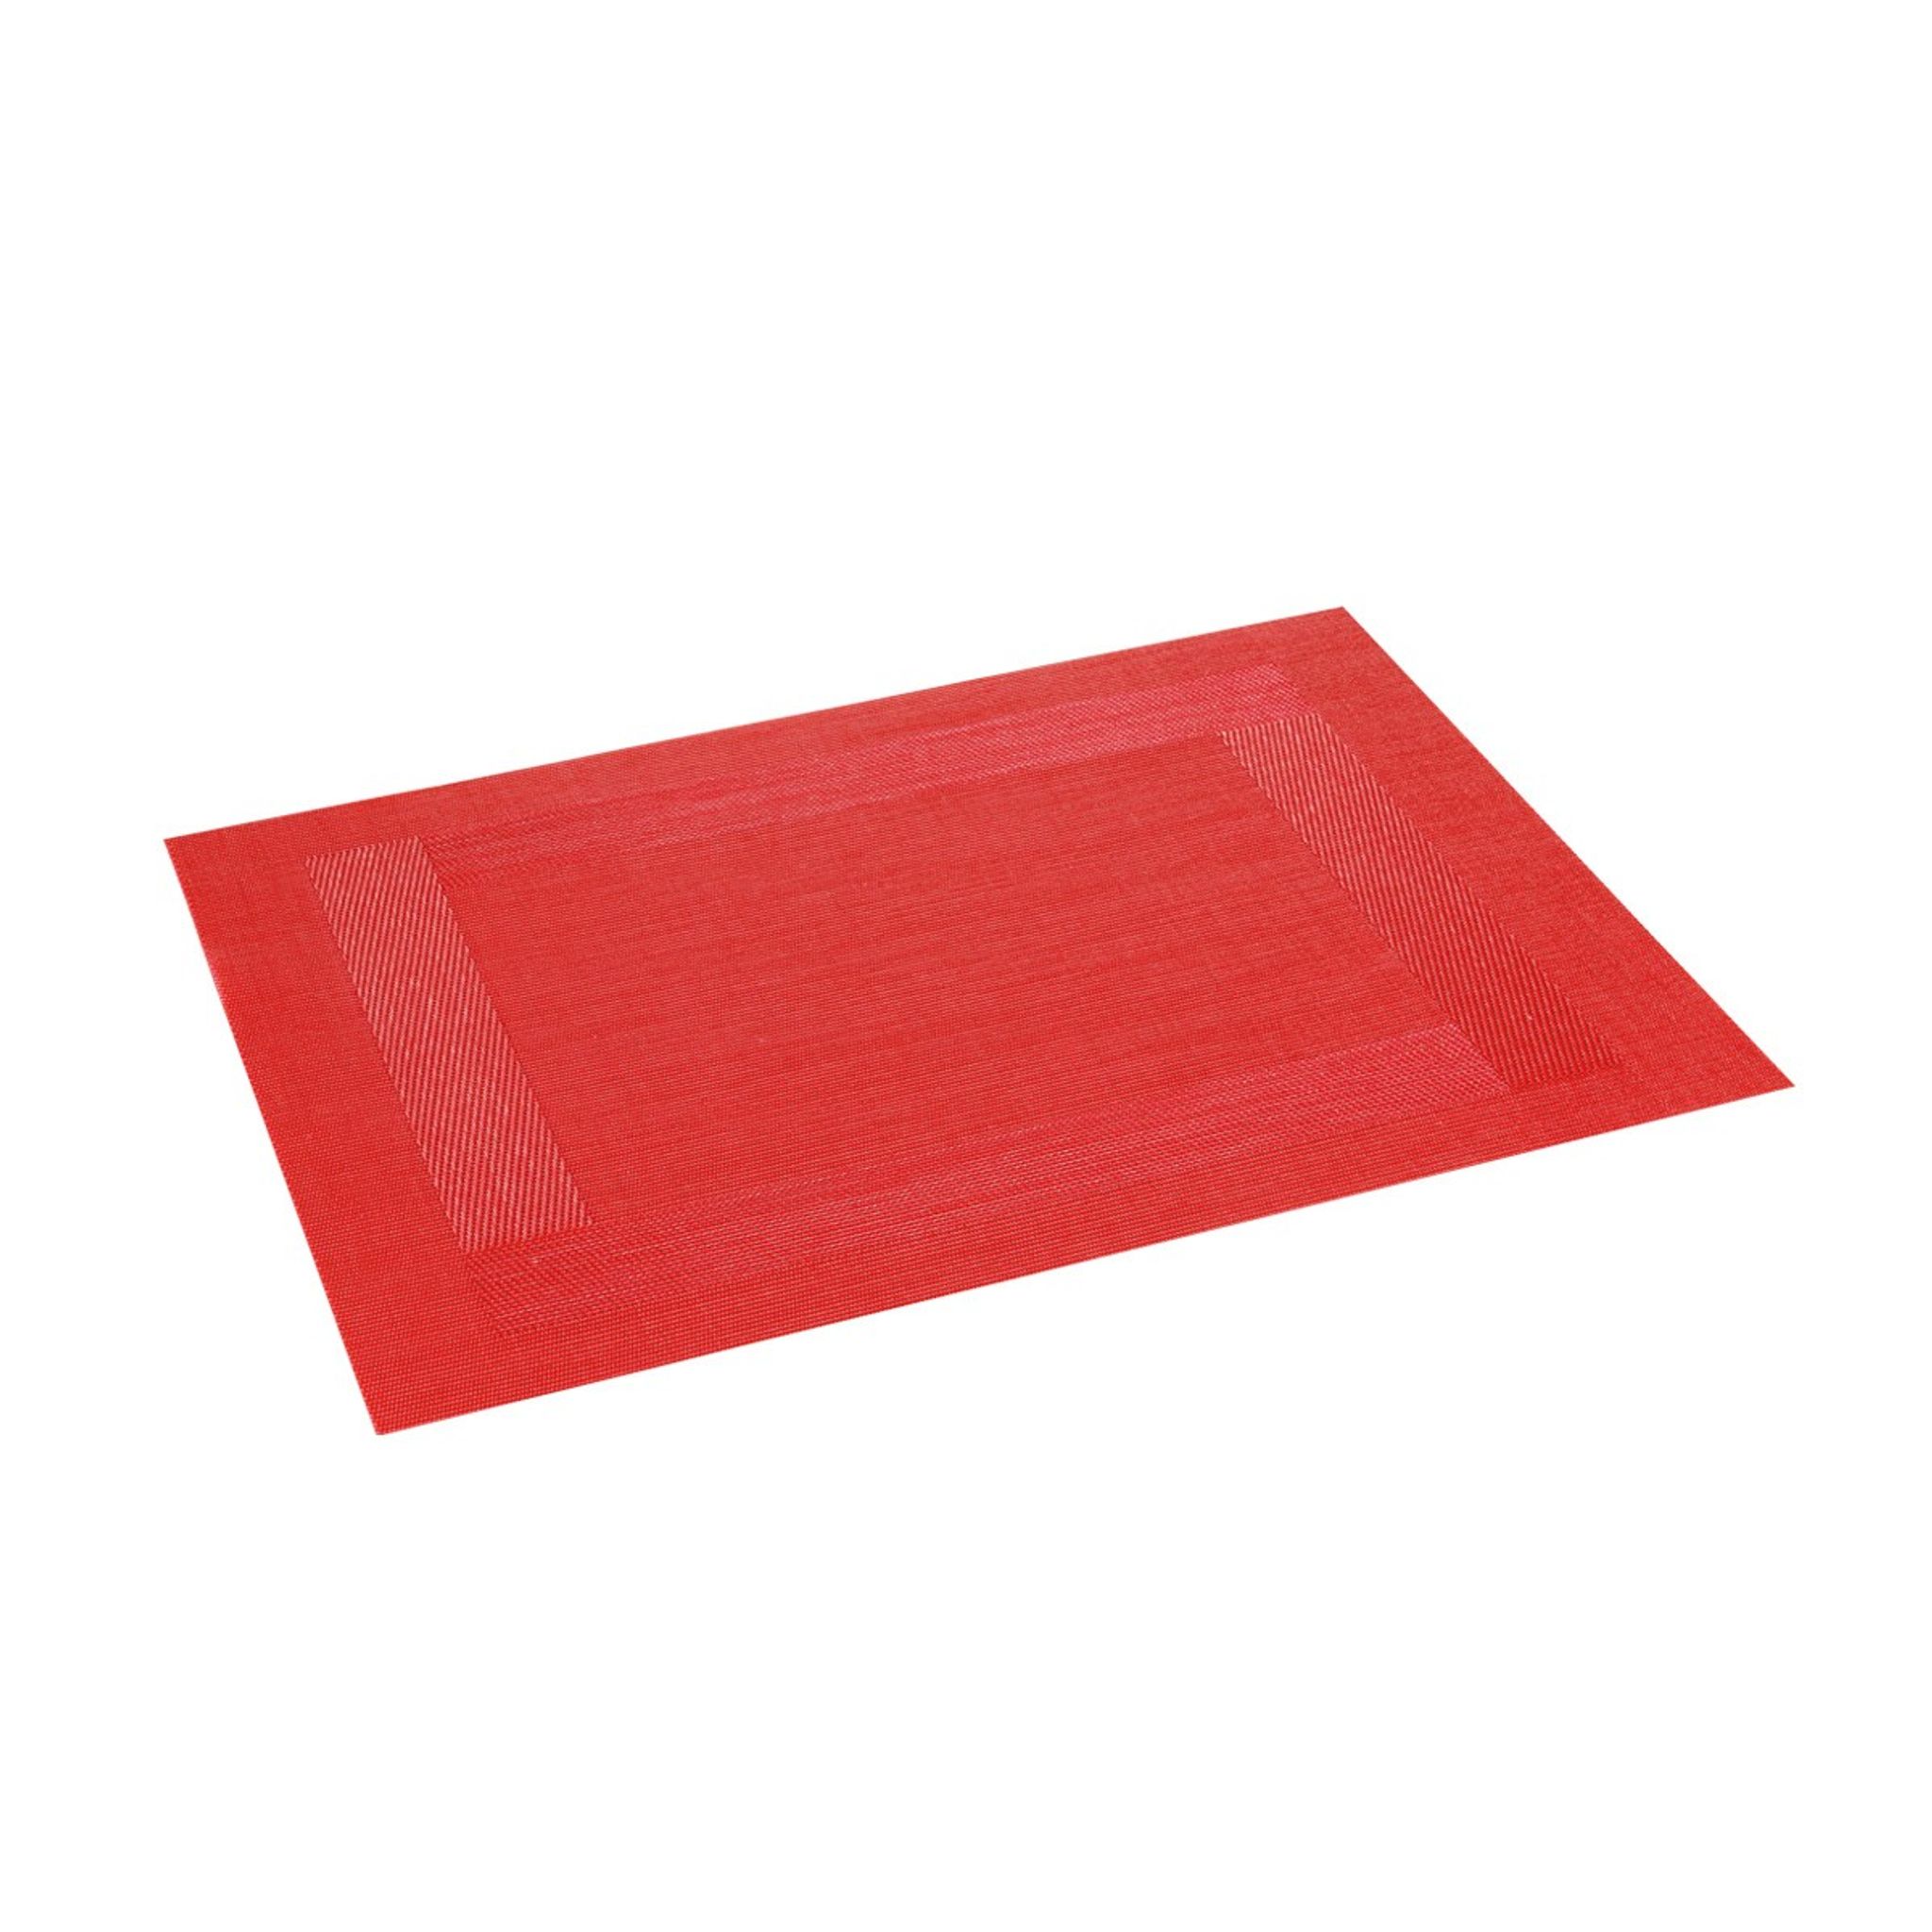 Prestieranie FLAIR FRAME 45x32 cm, červená